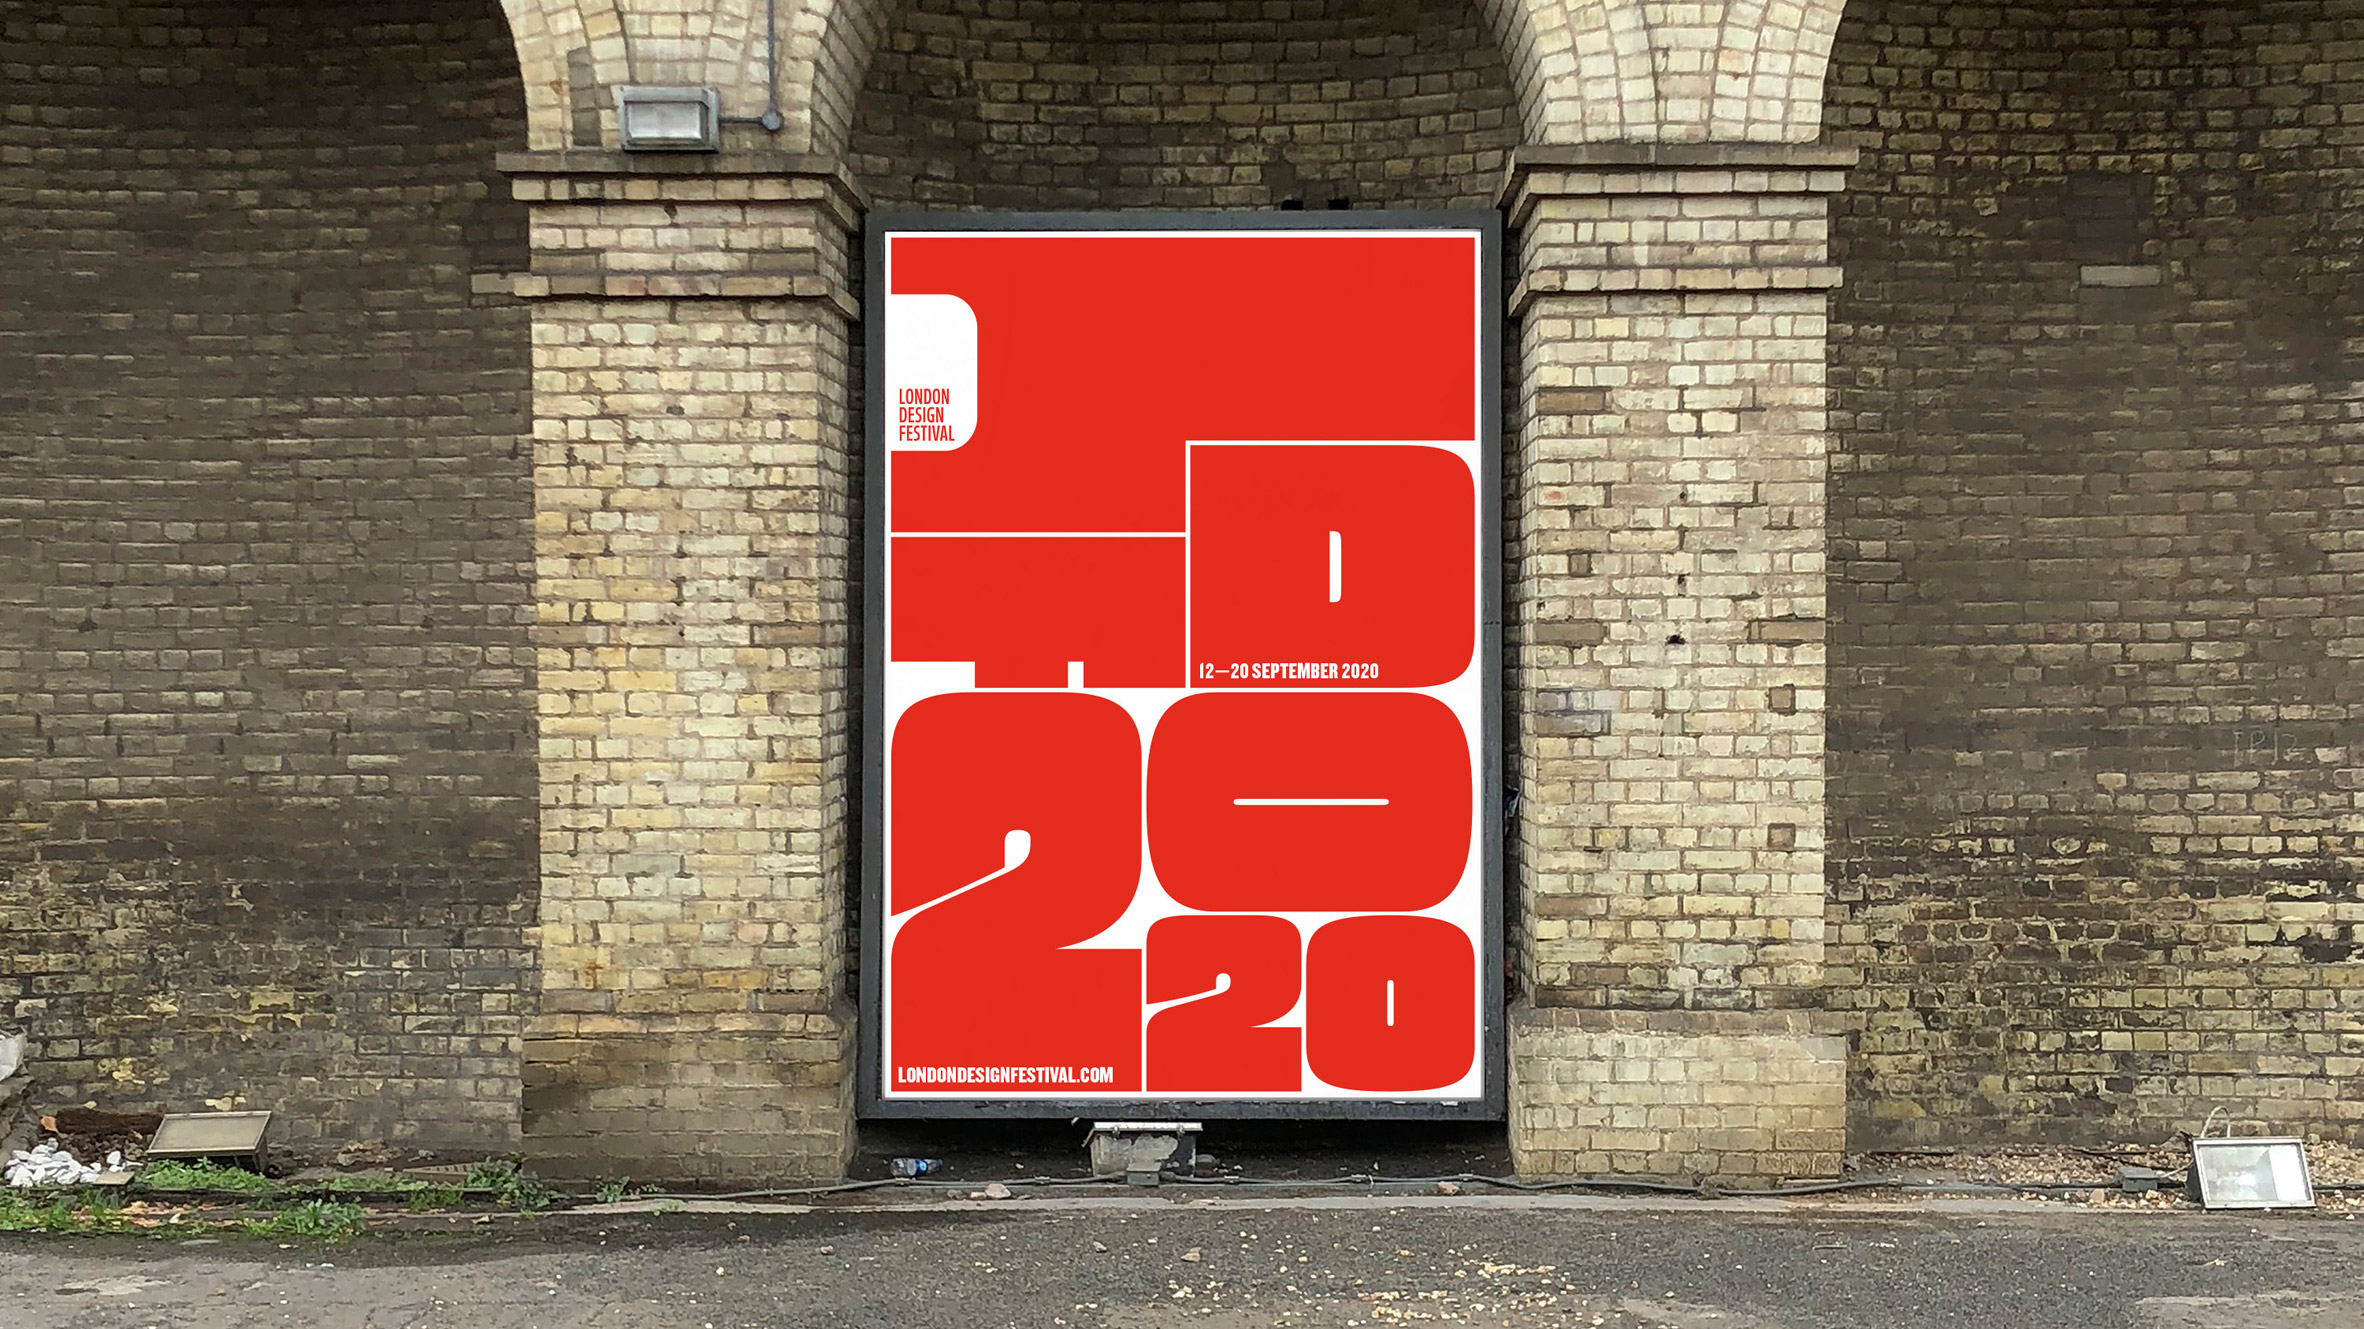 Identity for the London Design Festival 2020 designed by Pentagram